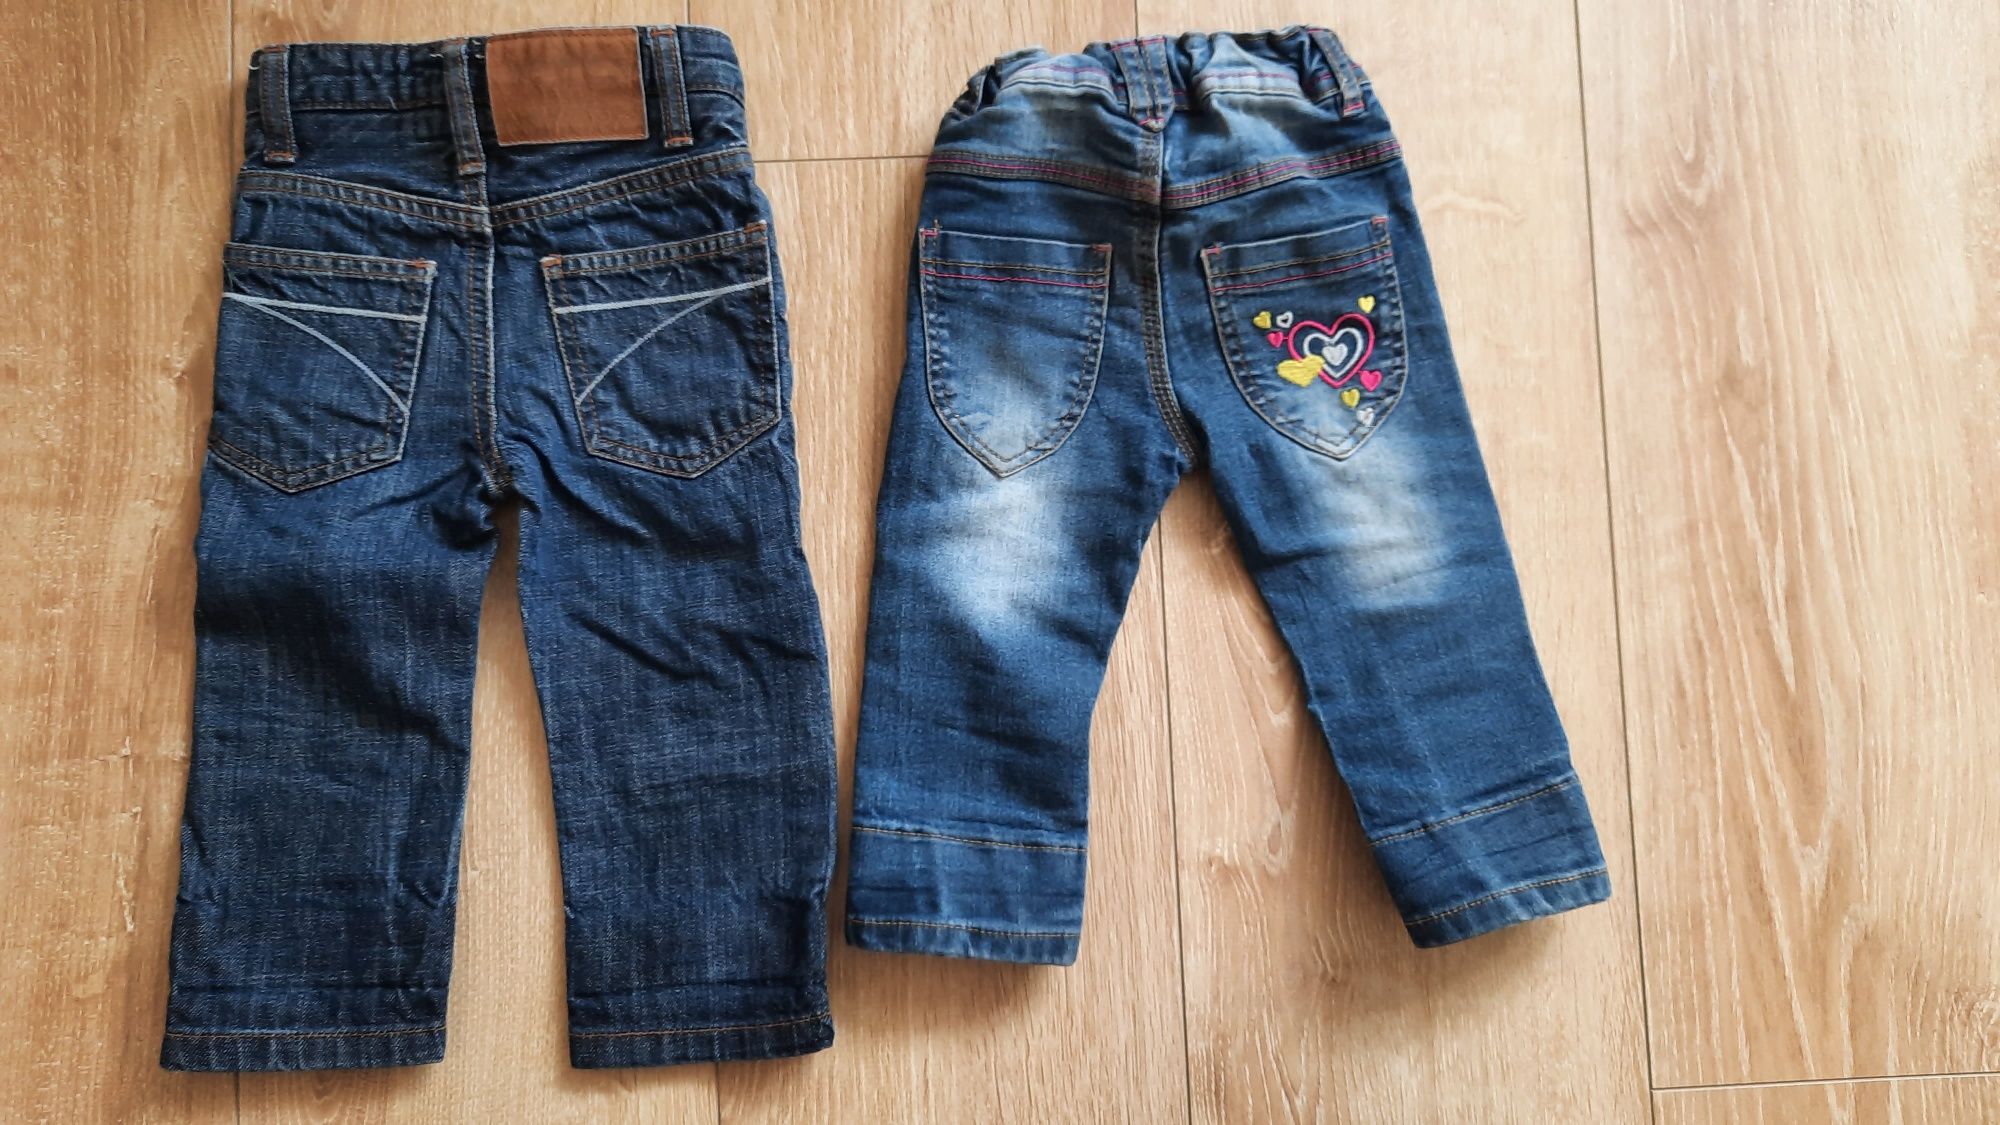 Spodnie jeansy rozm 80